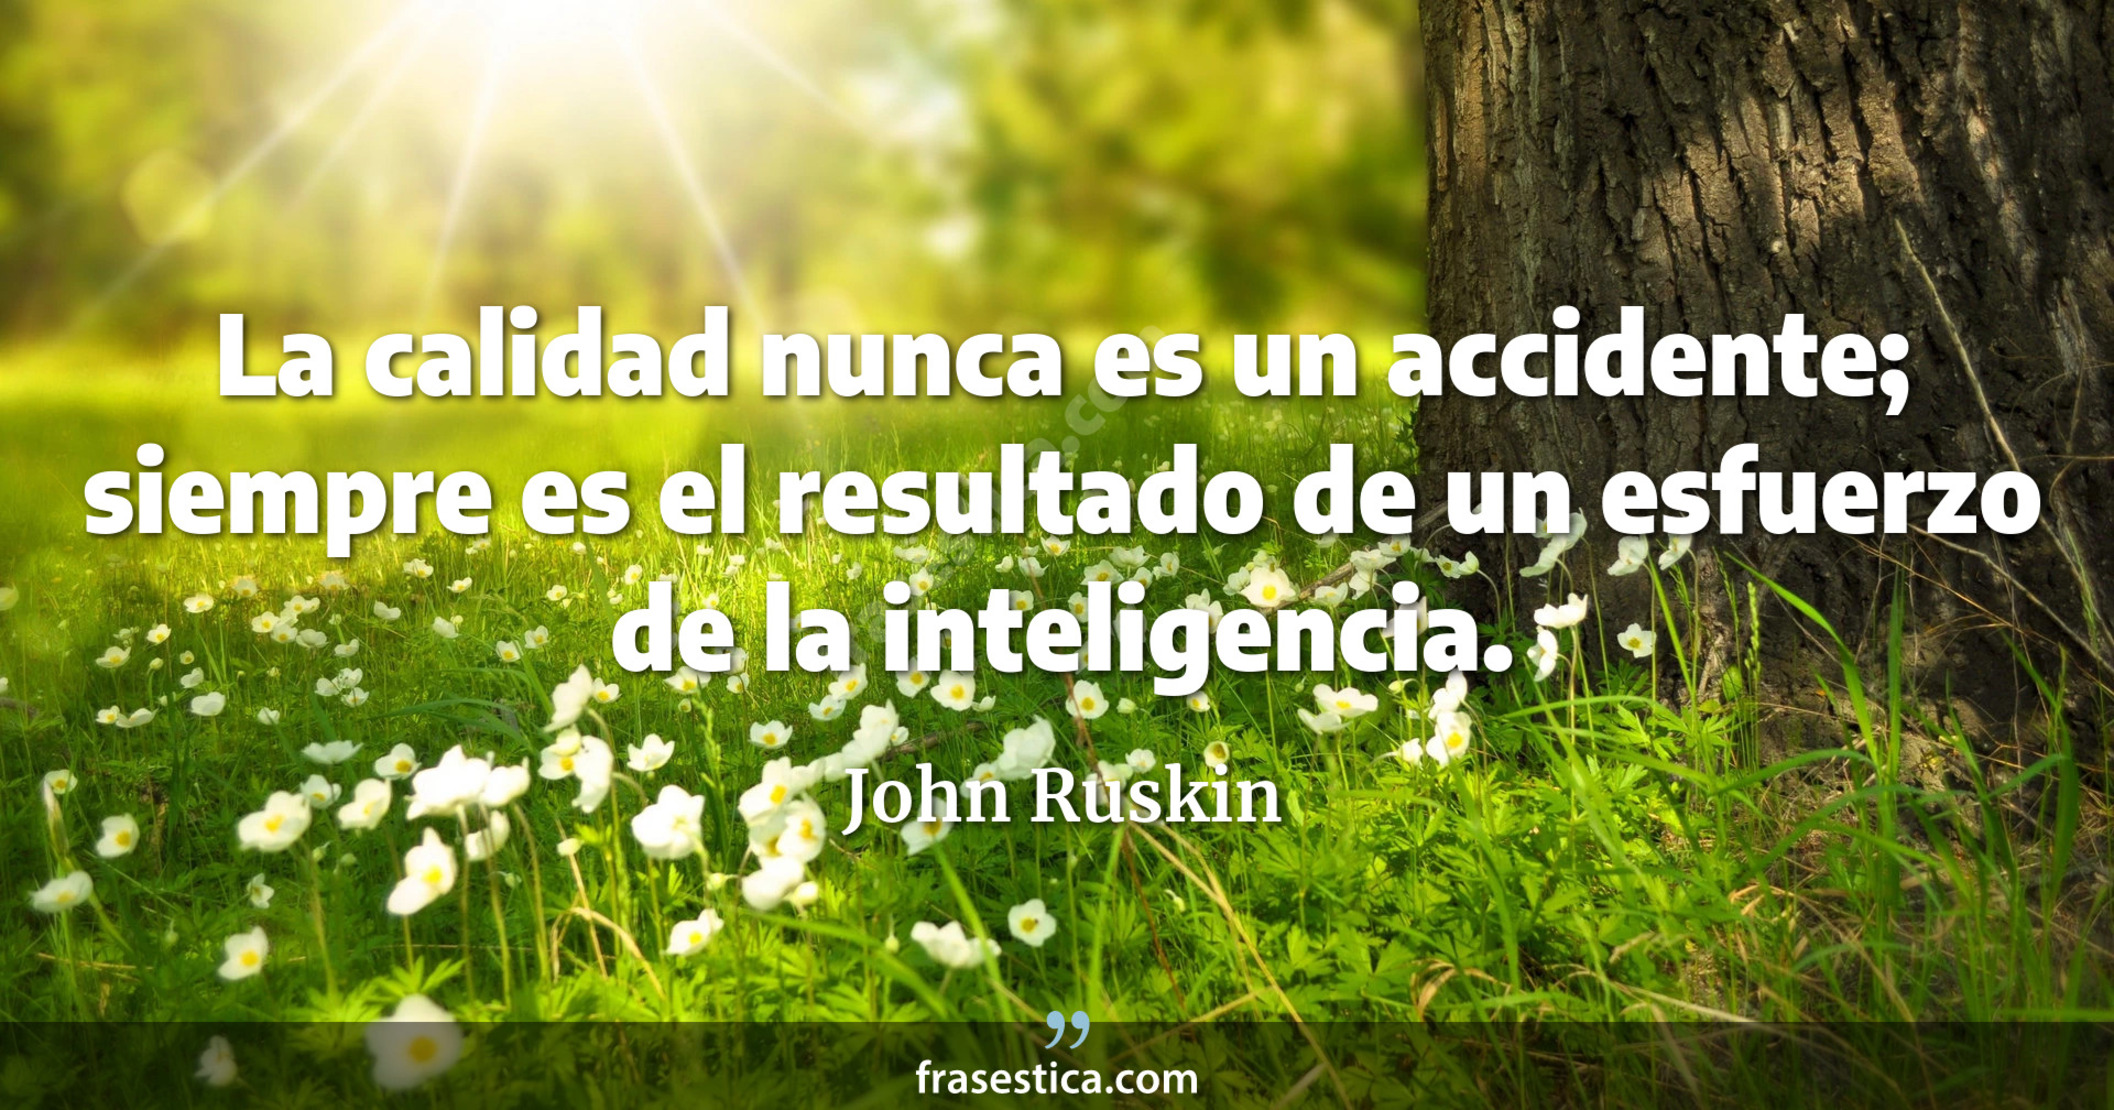 La calidad nunca es un accidente; siempre es el resultado de un esfuerzo de la inteligencia. - John Ruskin